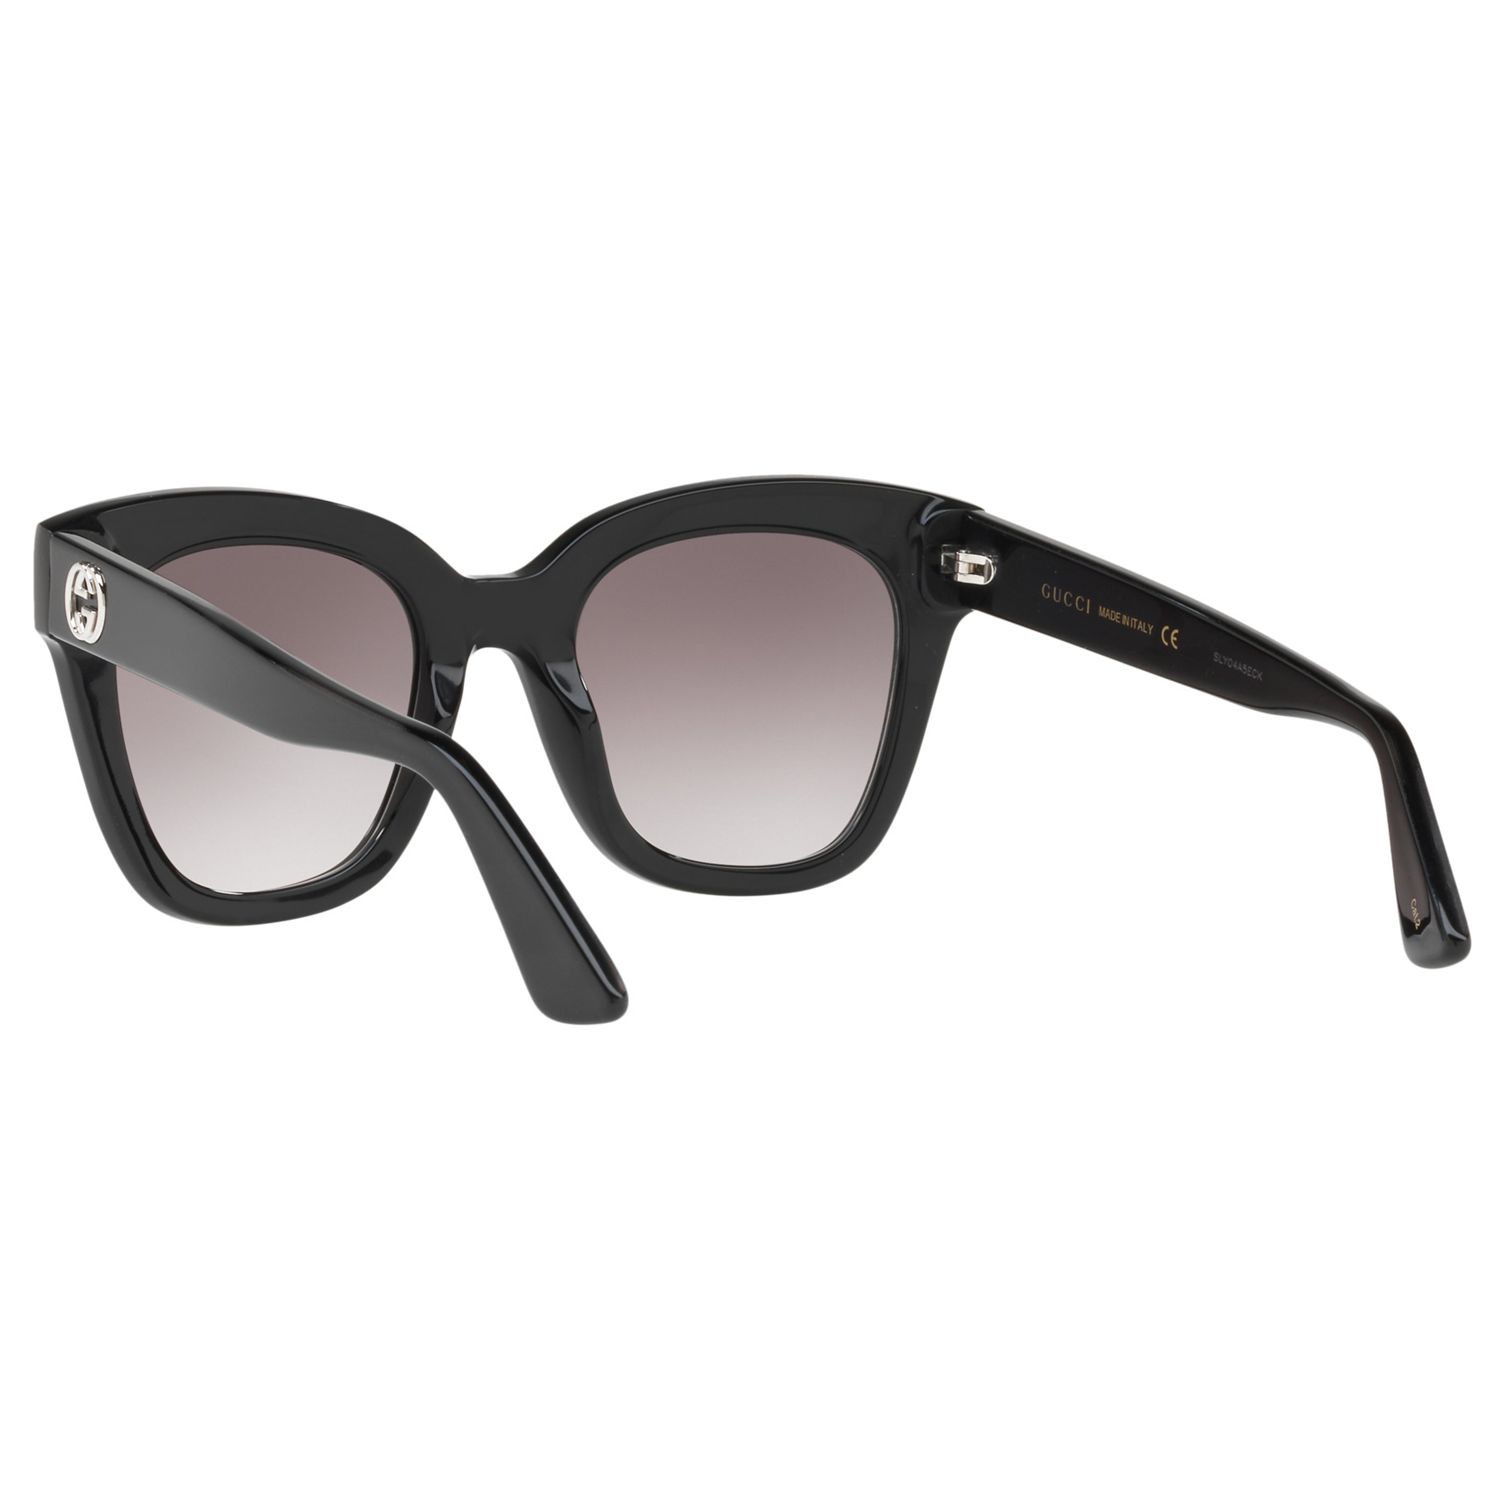 Gucci GG0029S Women's Square Sunglasses, Black/Grey Gradient